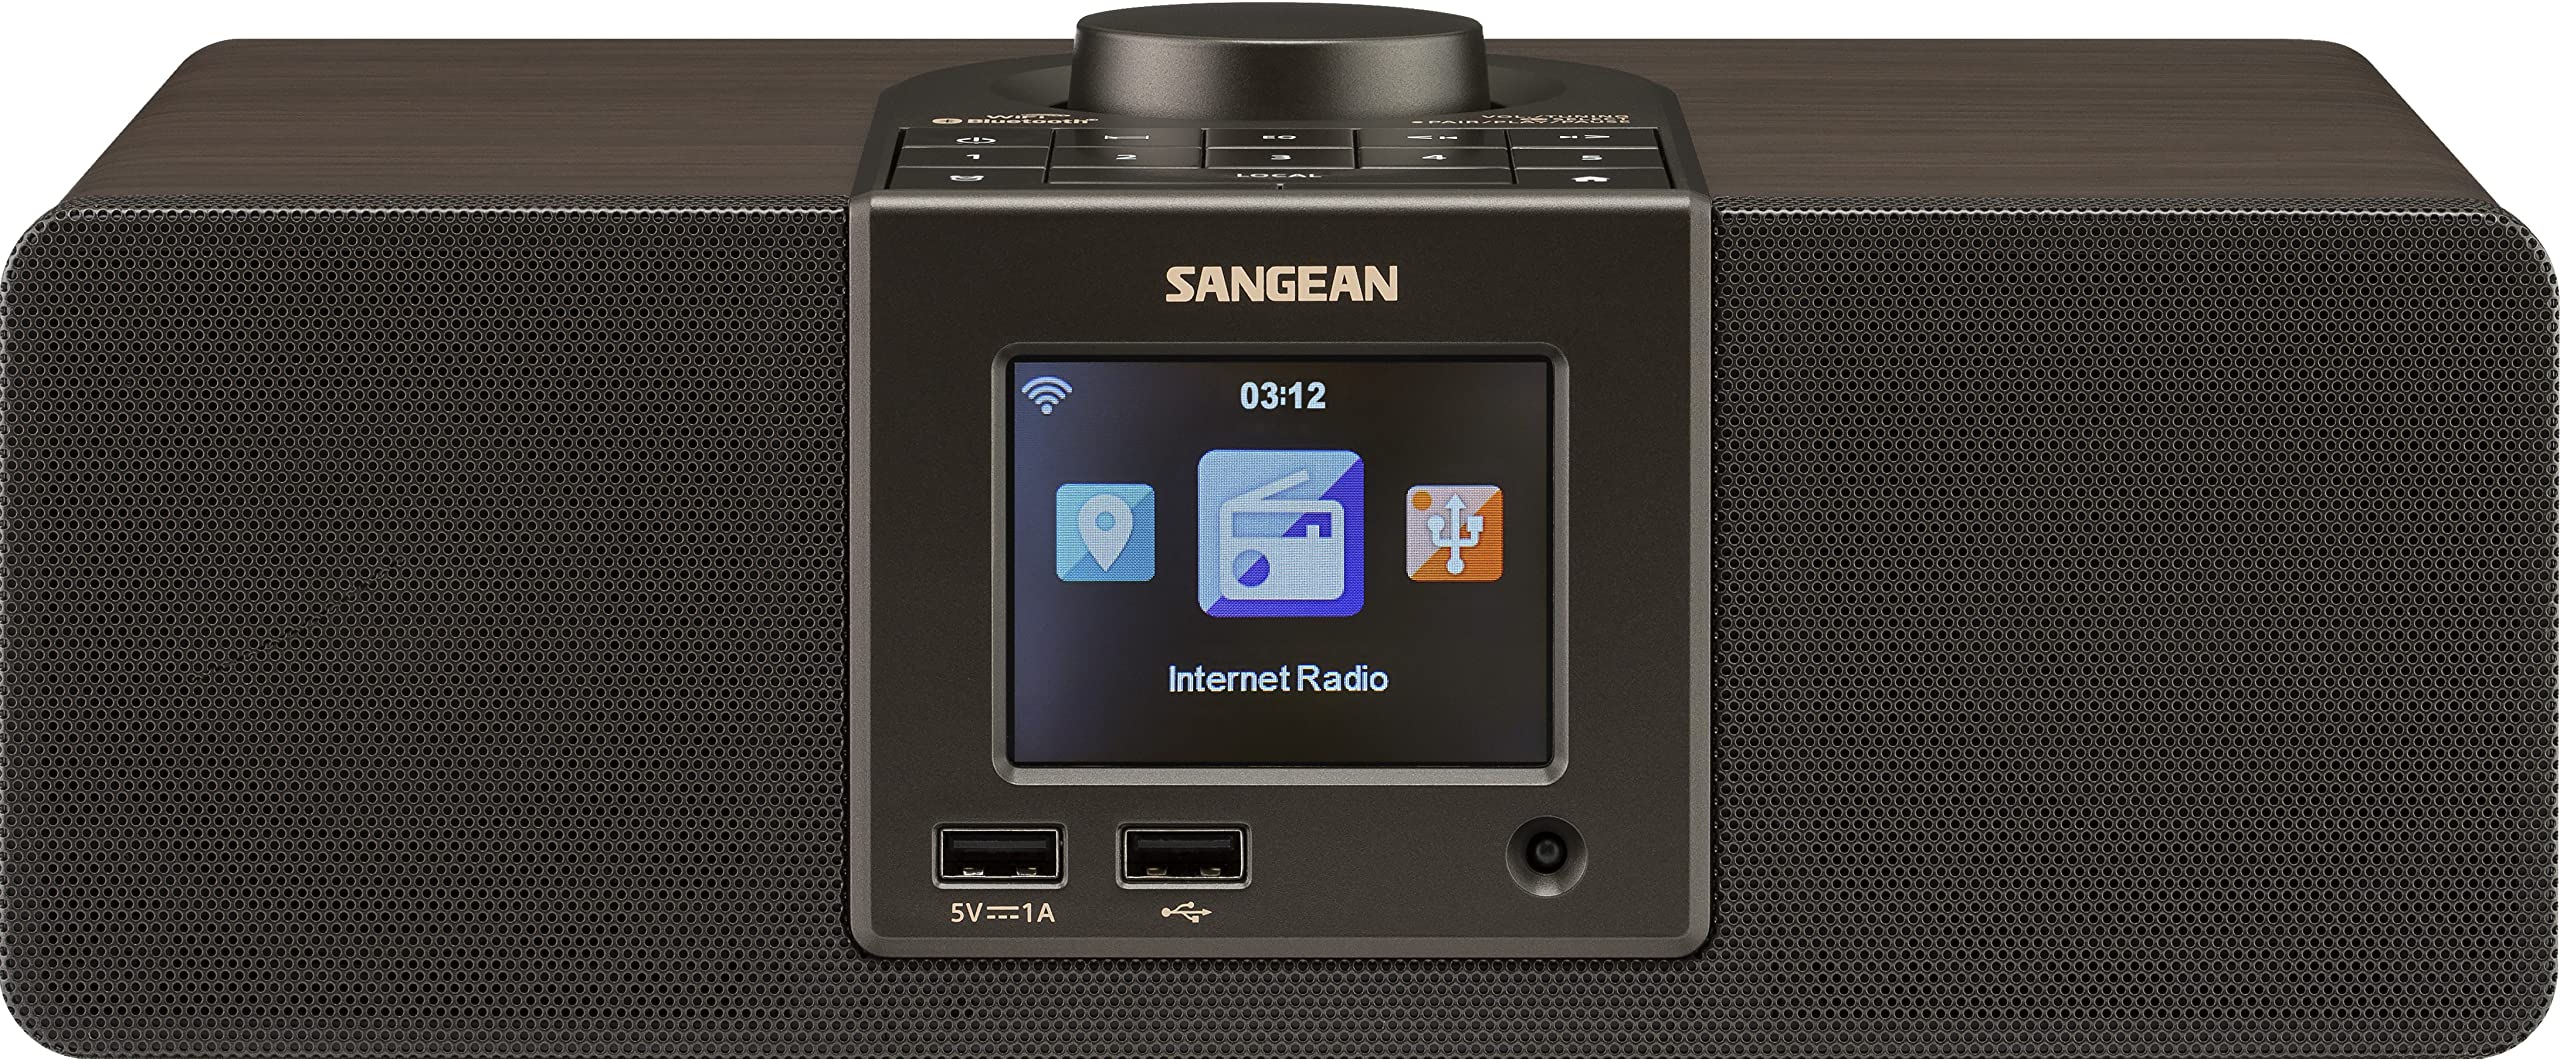 Sangean WFR-32 7-Watt Stereo Wood Cabinet Wi-Fi Interne...